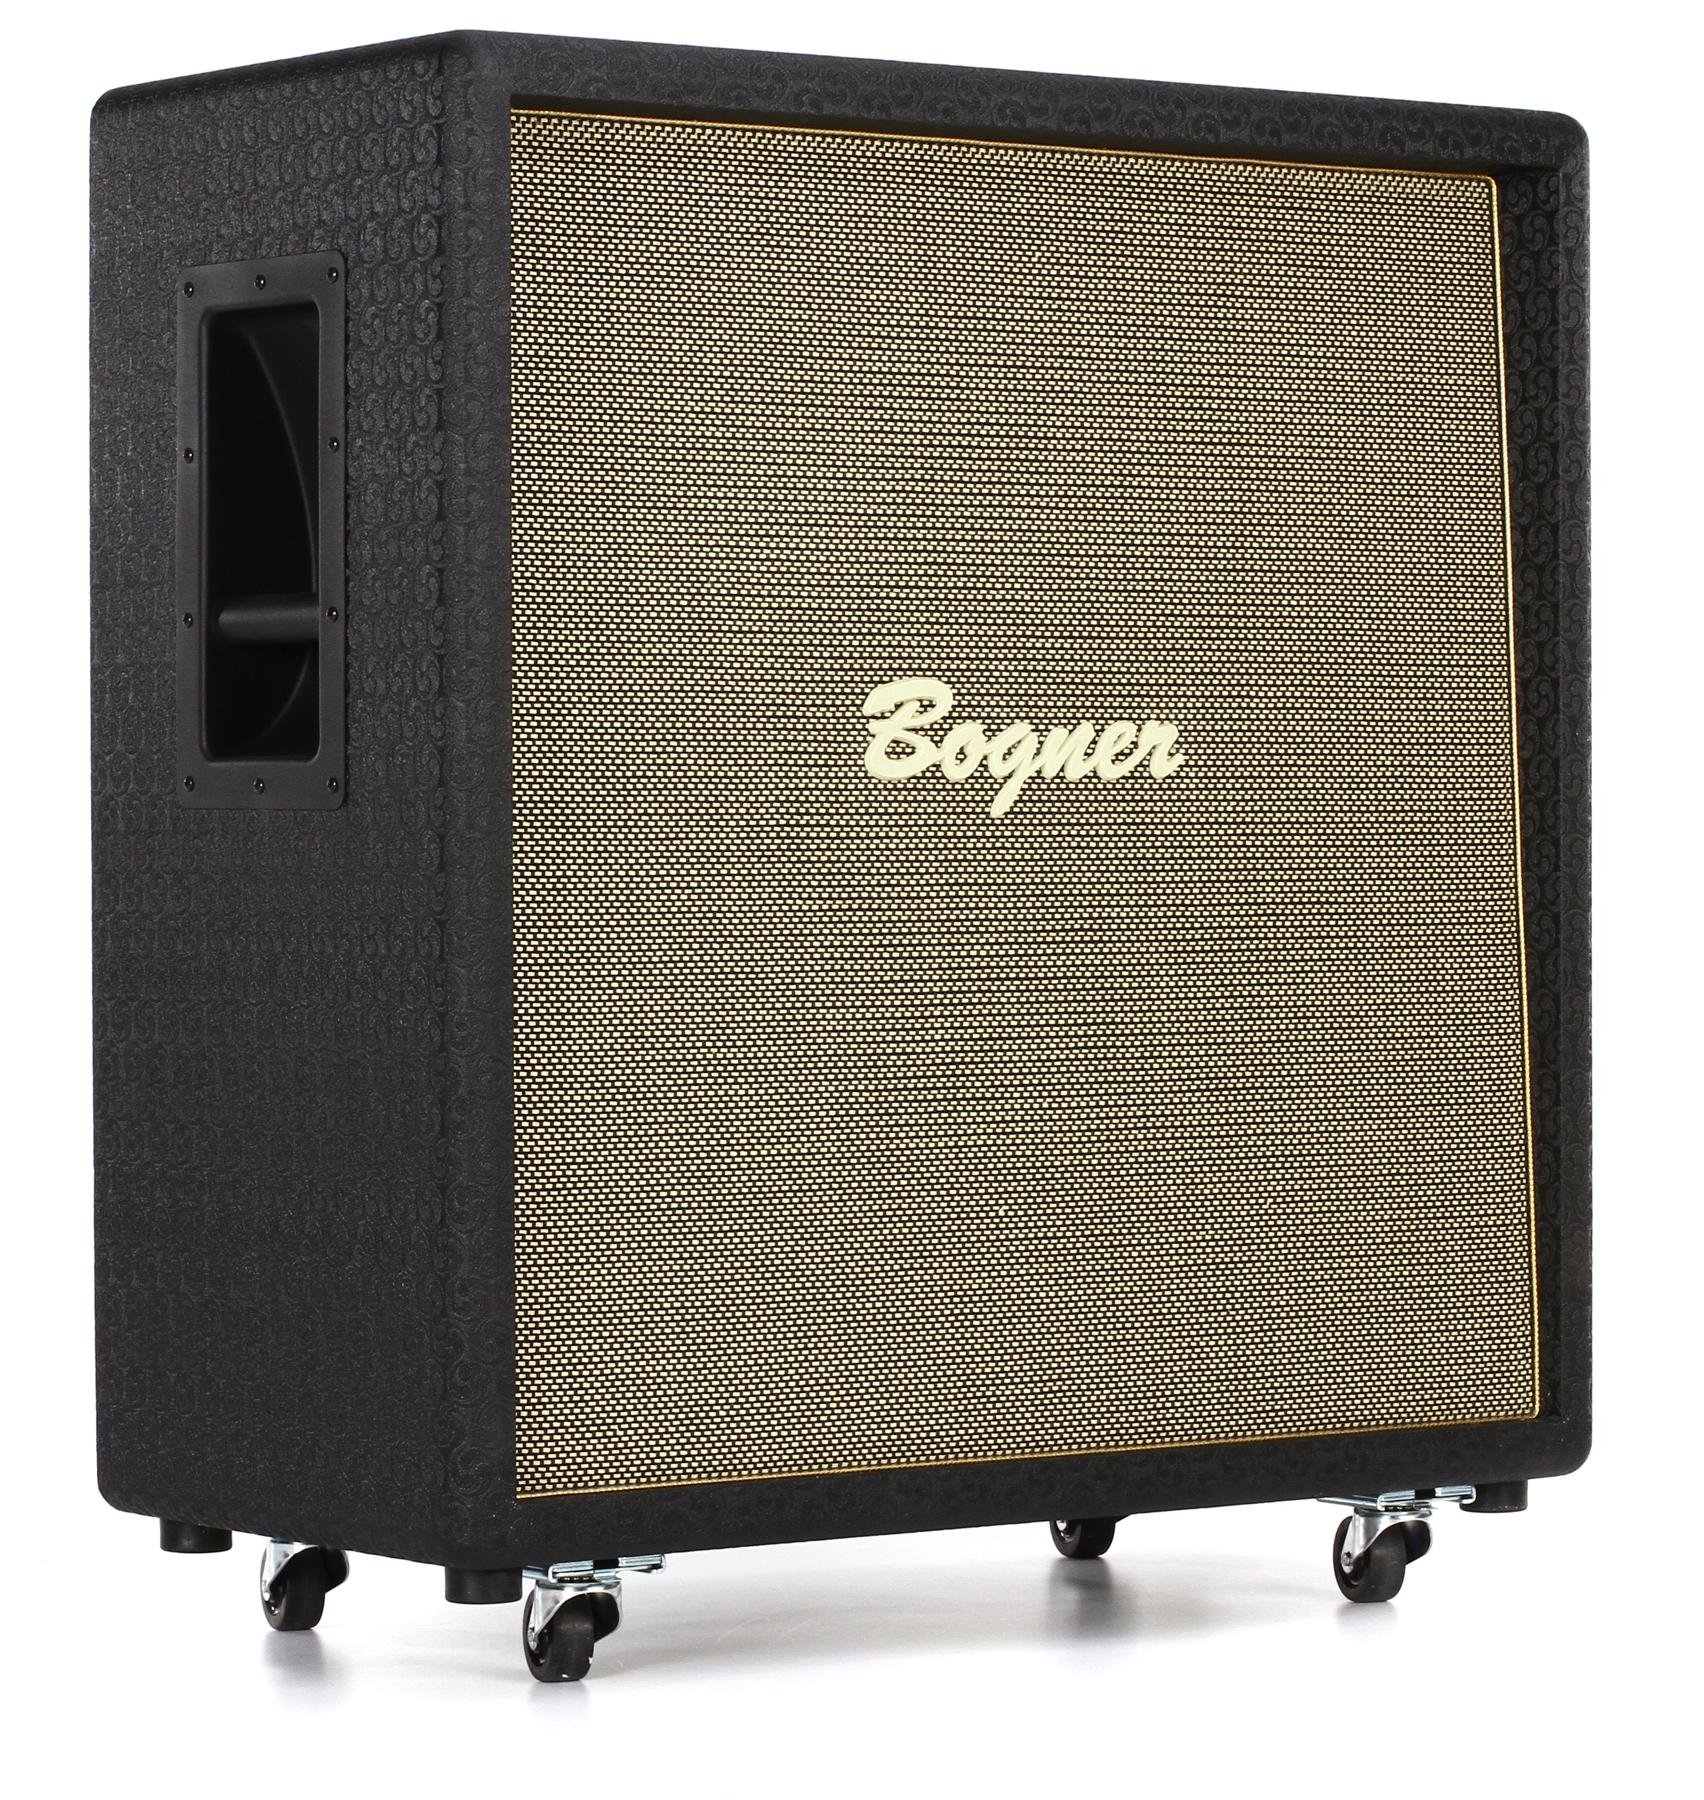 Bogner 412ST 240-watt 4x12 inch Straight Extension Cabinet 